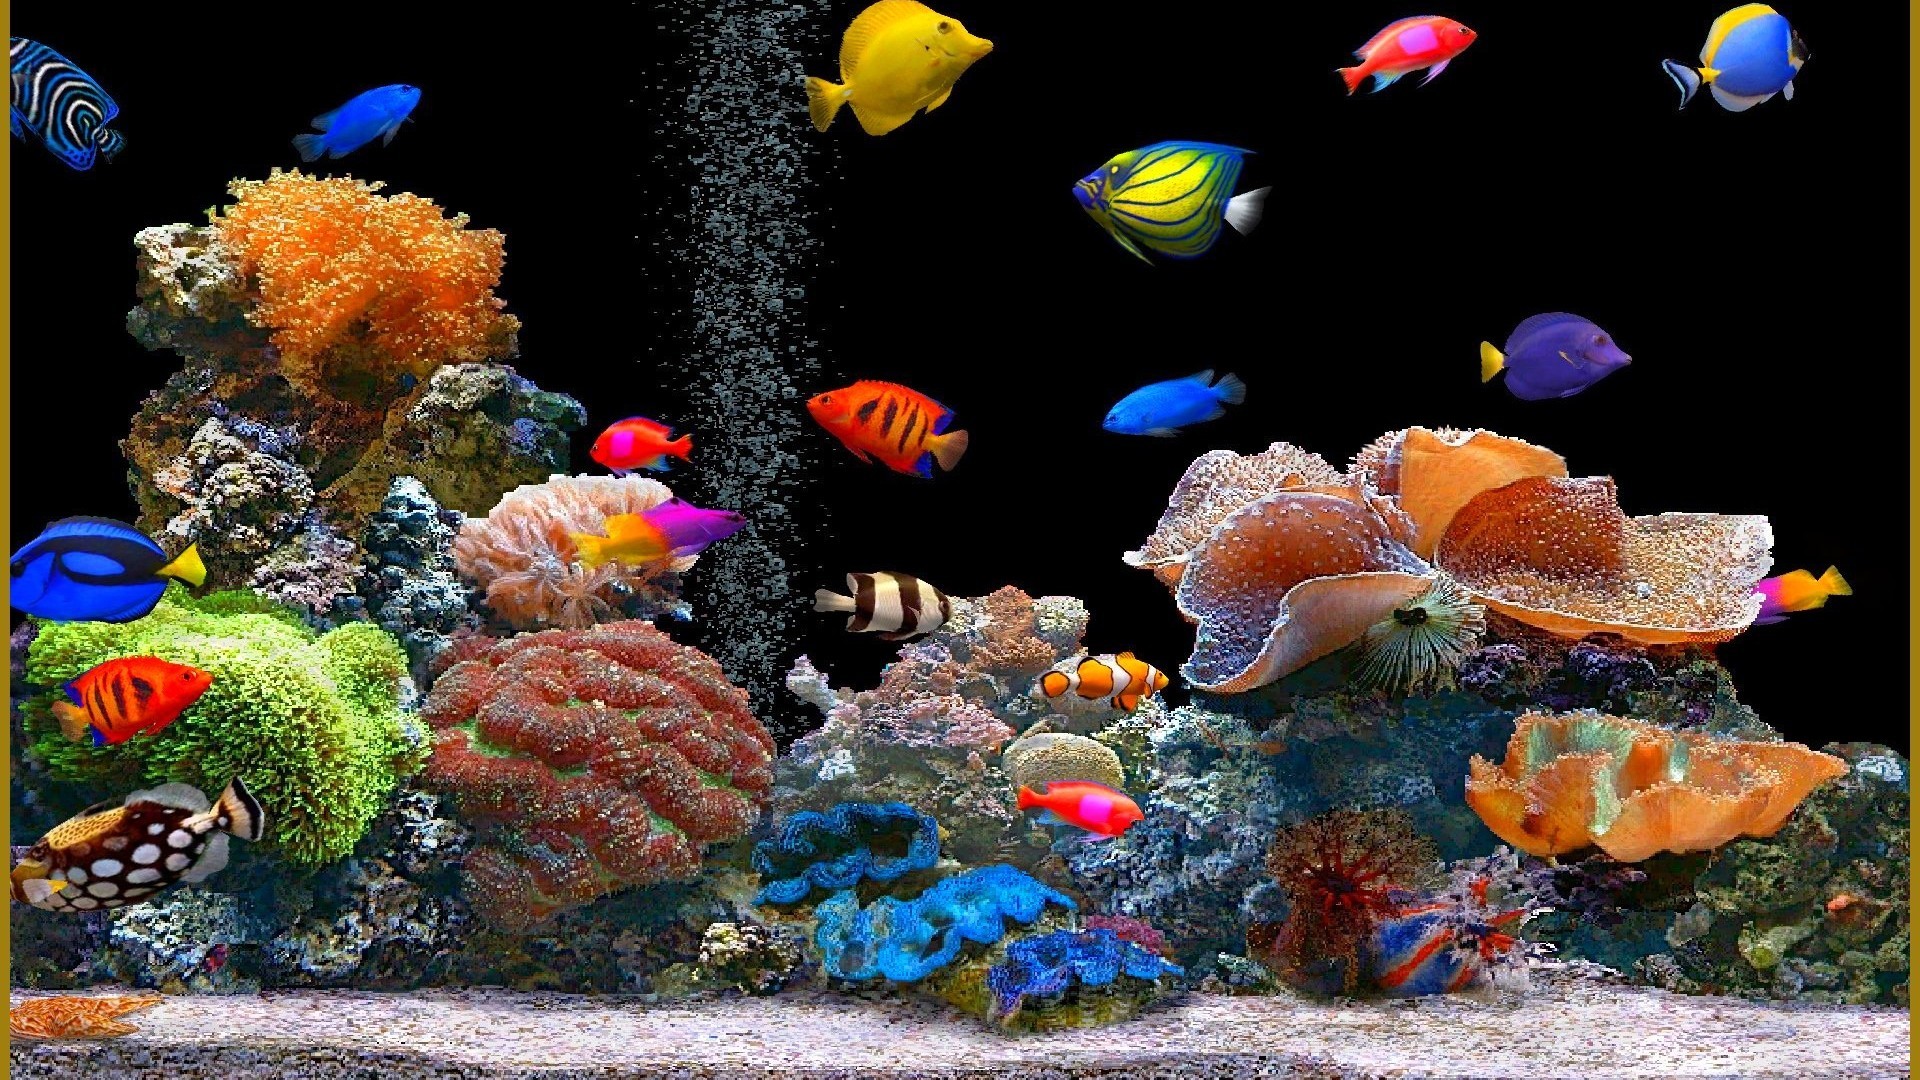 Moving Aquarium Wallpaper Image